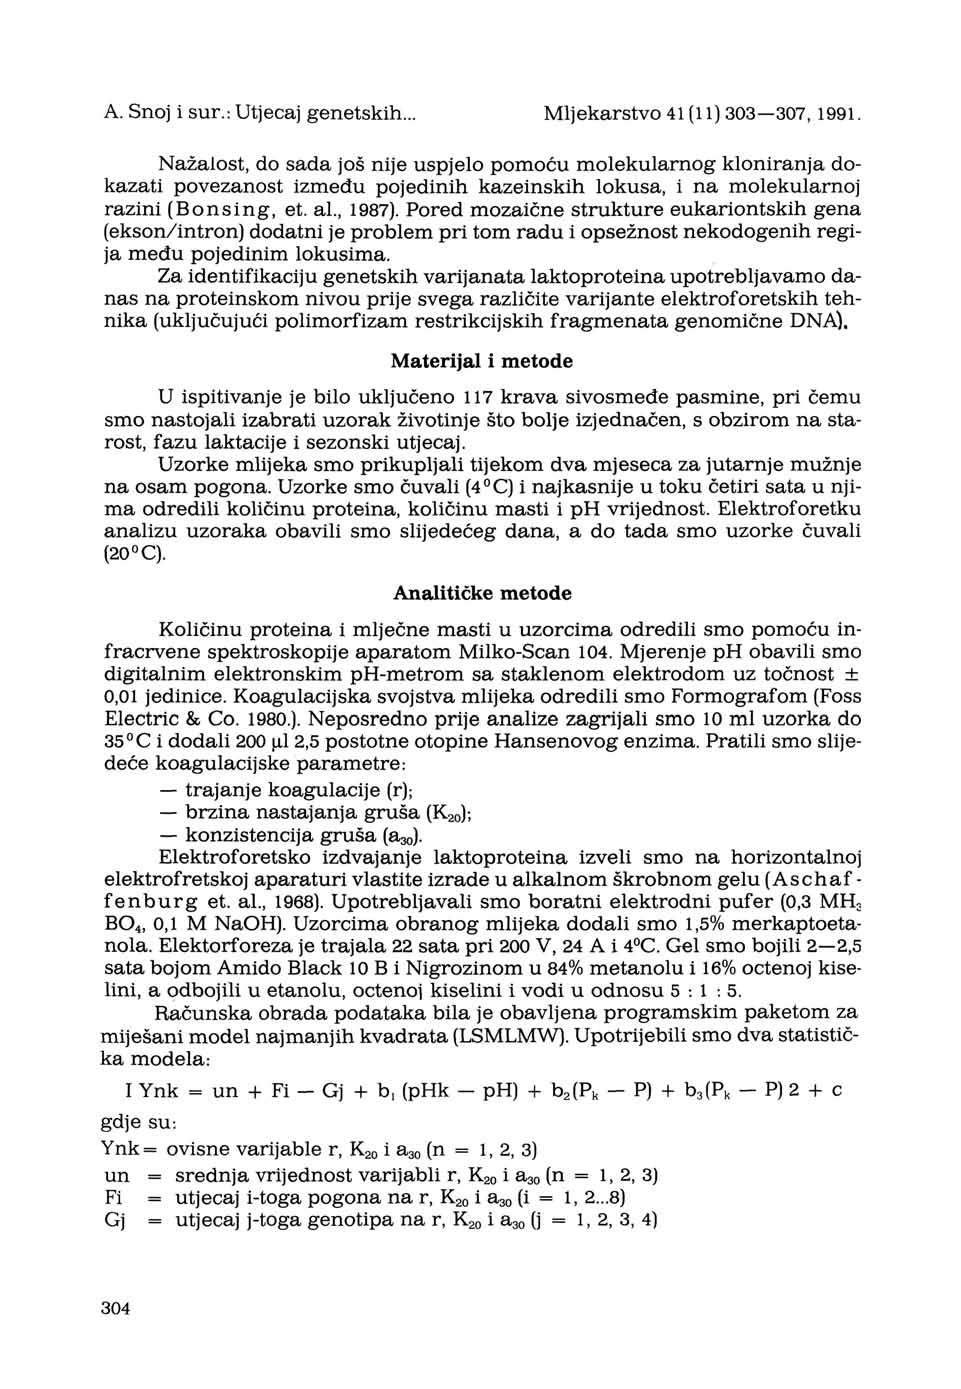 A. Snoj i sur.: Utjecaj genetskih... Mljekarstvo 41(11) 303 307, 1991.